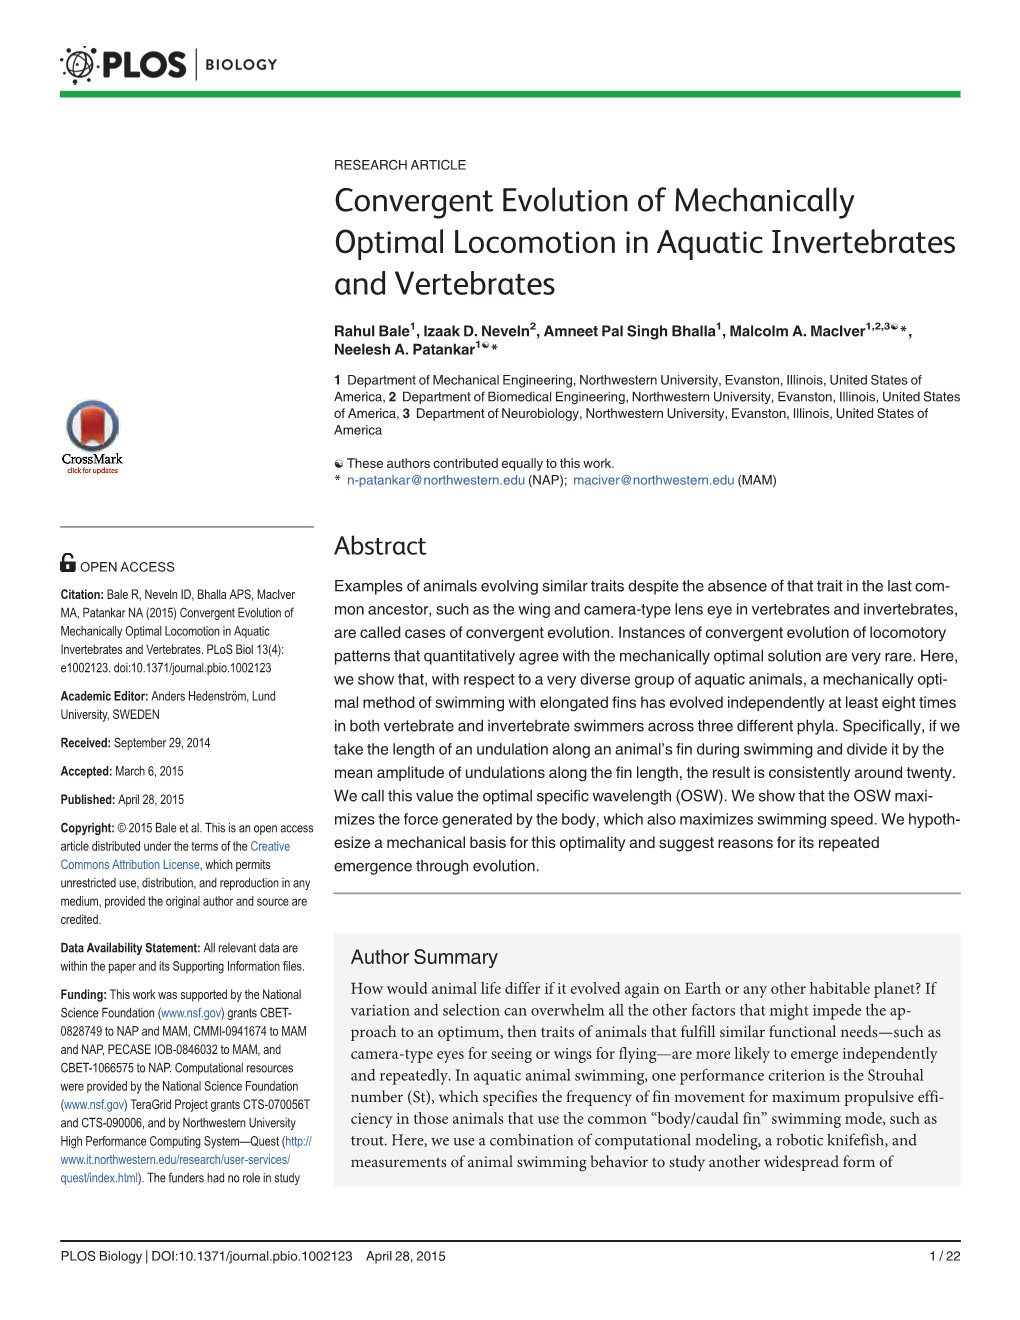 Convergent Evolution of Mechanically Optimal Locomotion in Aquatic Invertebrates and Vertebrates